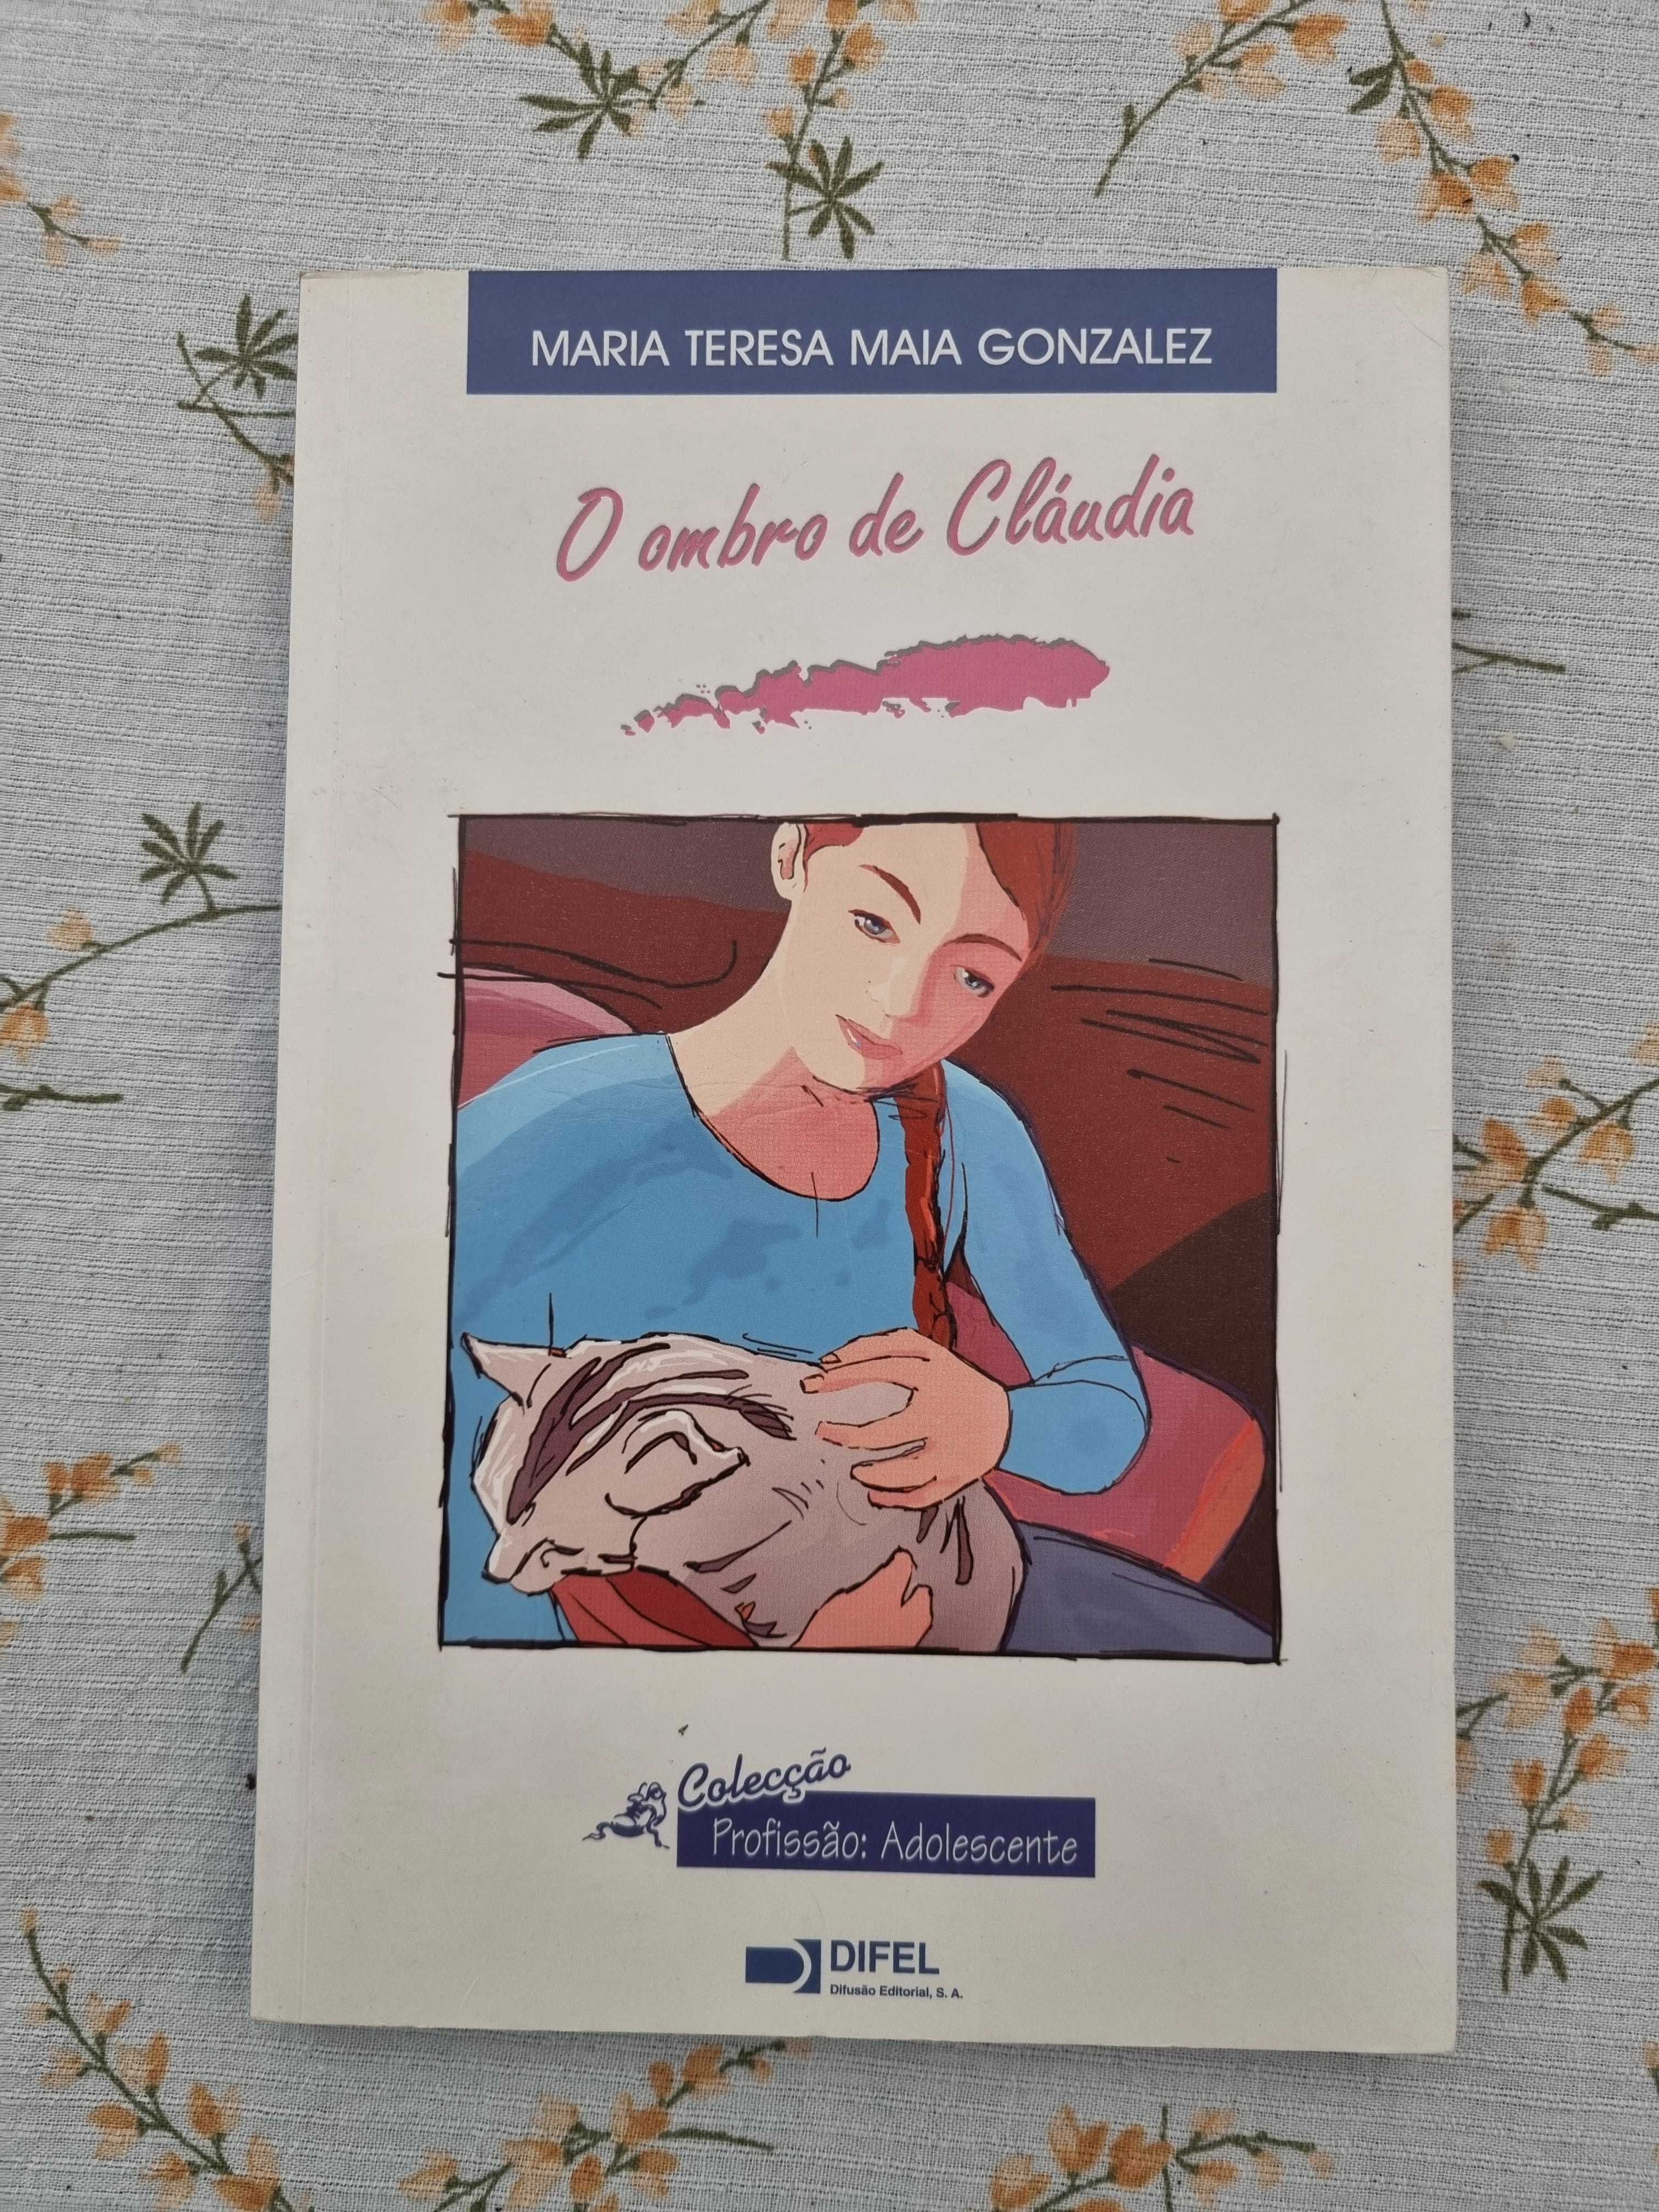 Livros juvenis Maria Teresa Maia Gonzalez e Paulo Coelho